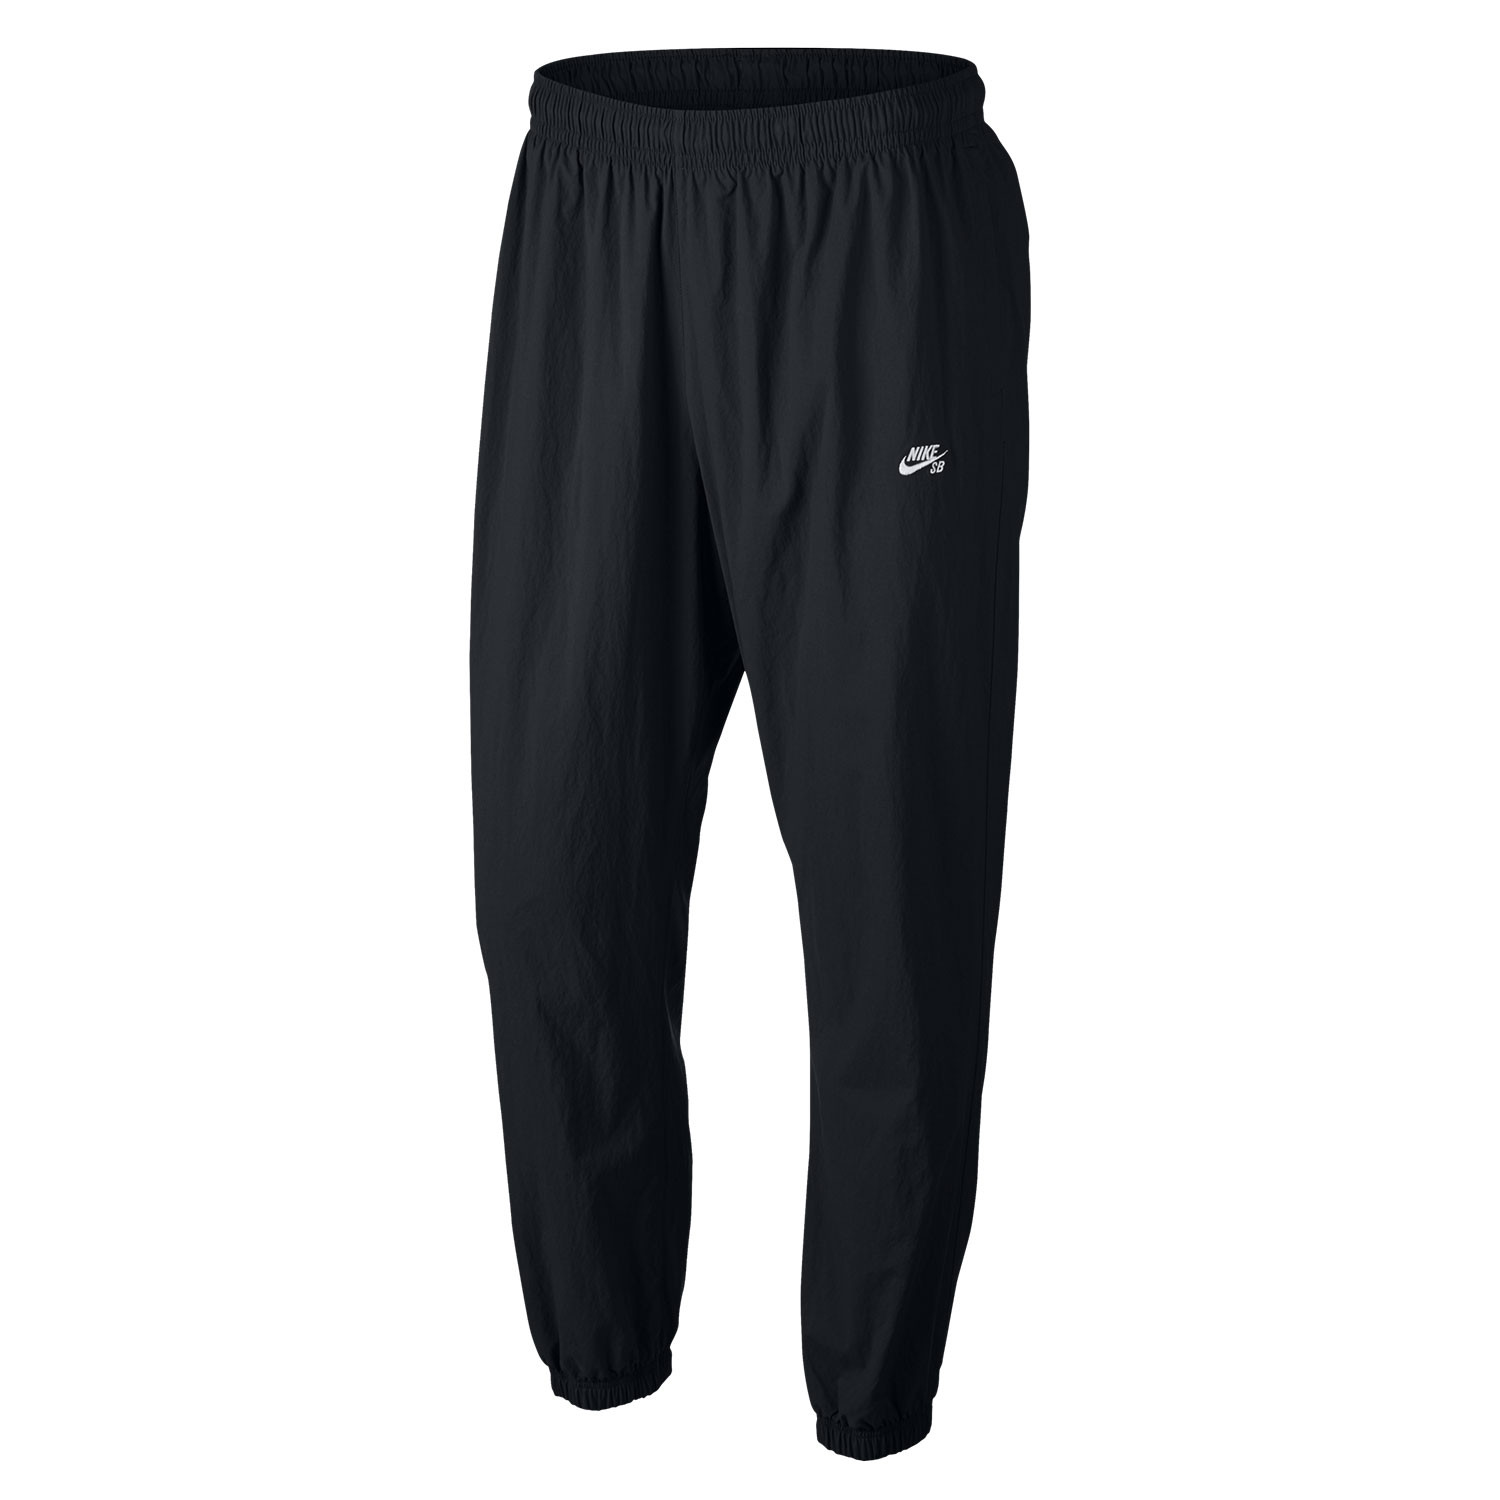 Nike SB Flex Pant Track black/white 